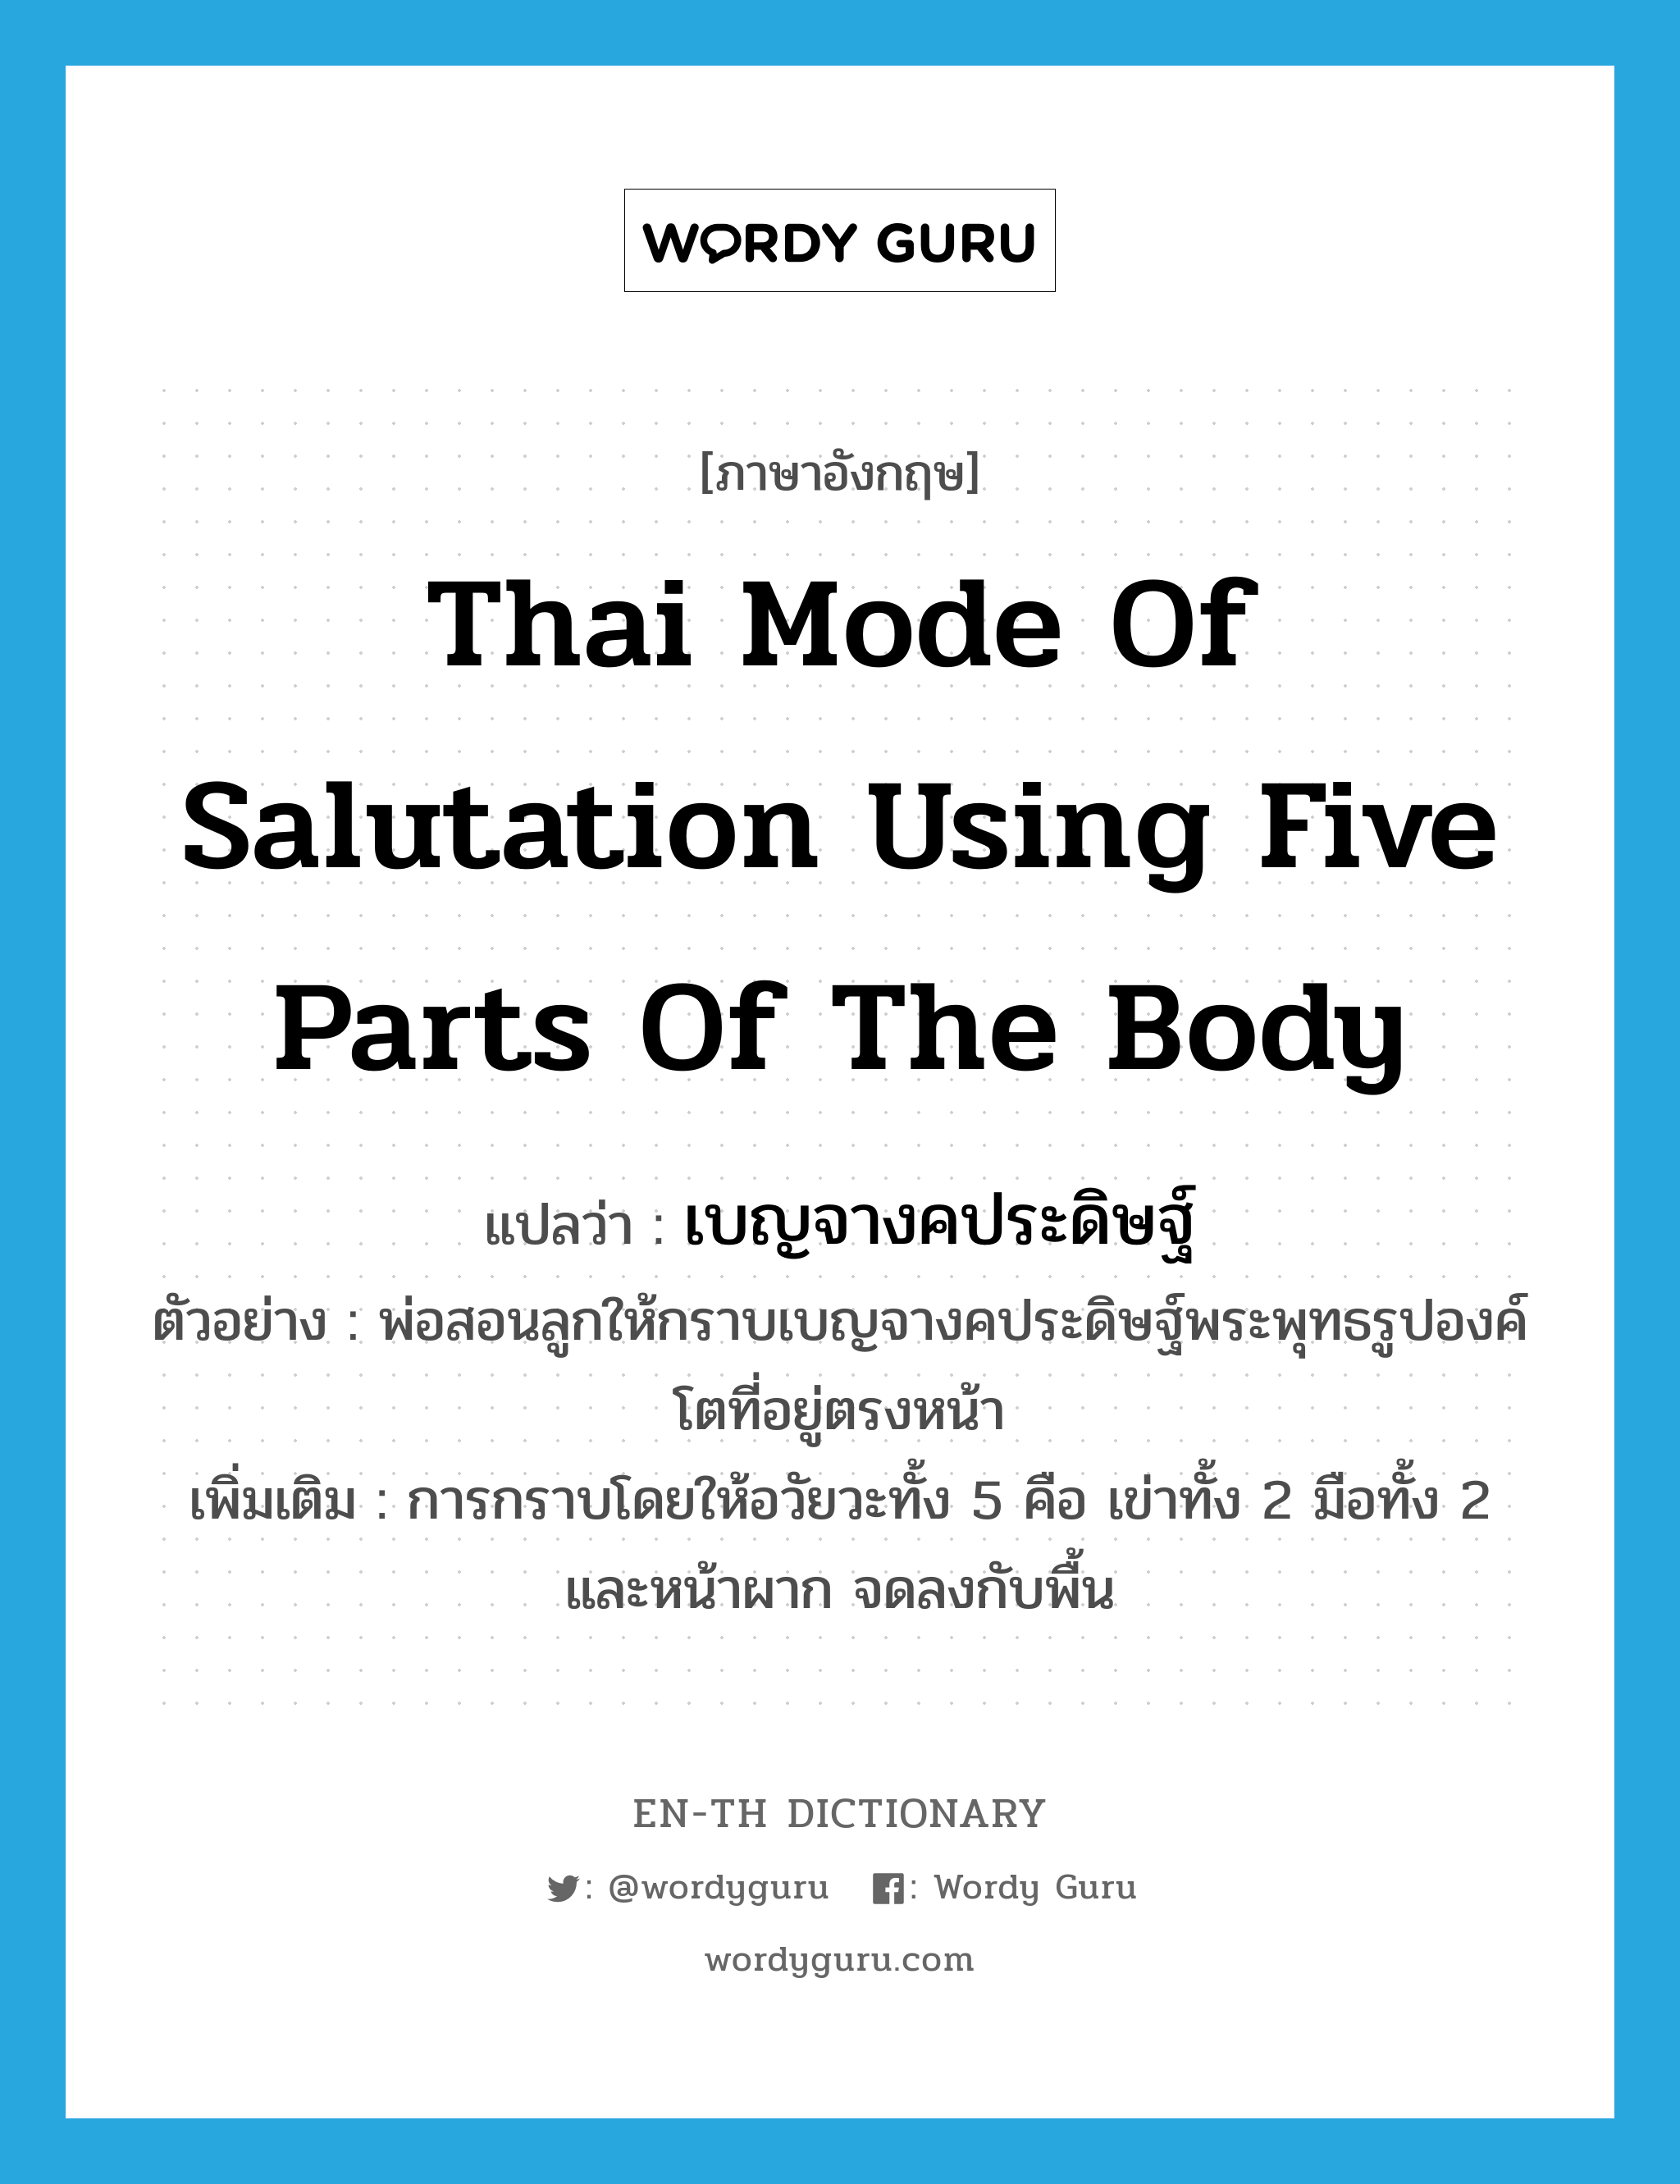 เบญจางคประดิษฐ์ ภาษาอังกฤษ?, คำศัพท์ภาษาอังกฤษ เบญจางคประดิษฐ์ แปลว่า Thai mode of salutation using five parts of the body ประเภท N ตัวอย่าง พ่อสอนลูกให้กราบเบญจางคประดิษฐ์พระพุทธรูปองค์โตที่อยู่ตรงหน้า เพิ่มเติม การกราบโดยให้อวัยวะทั้ง 5 คือ เข่าทั้ง 2 มือทั้ง 2 และหน้าผาก จดลงกับพื้น หมวด N